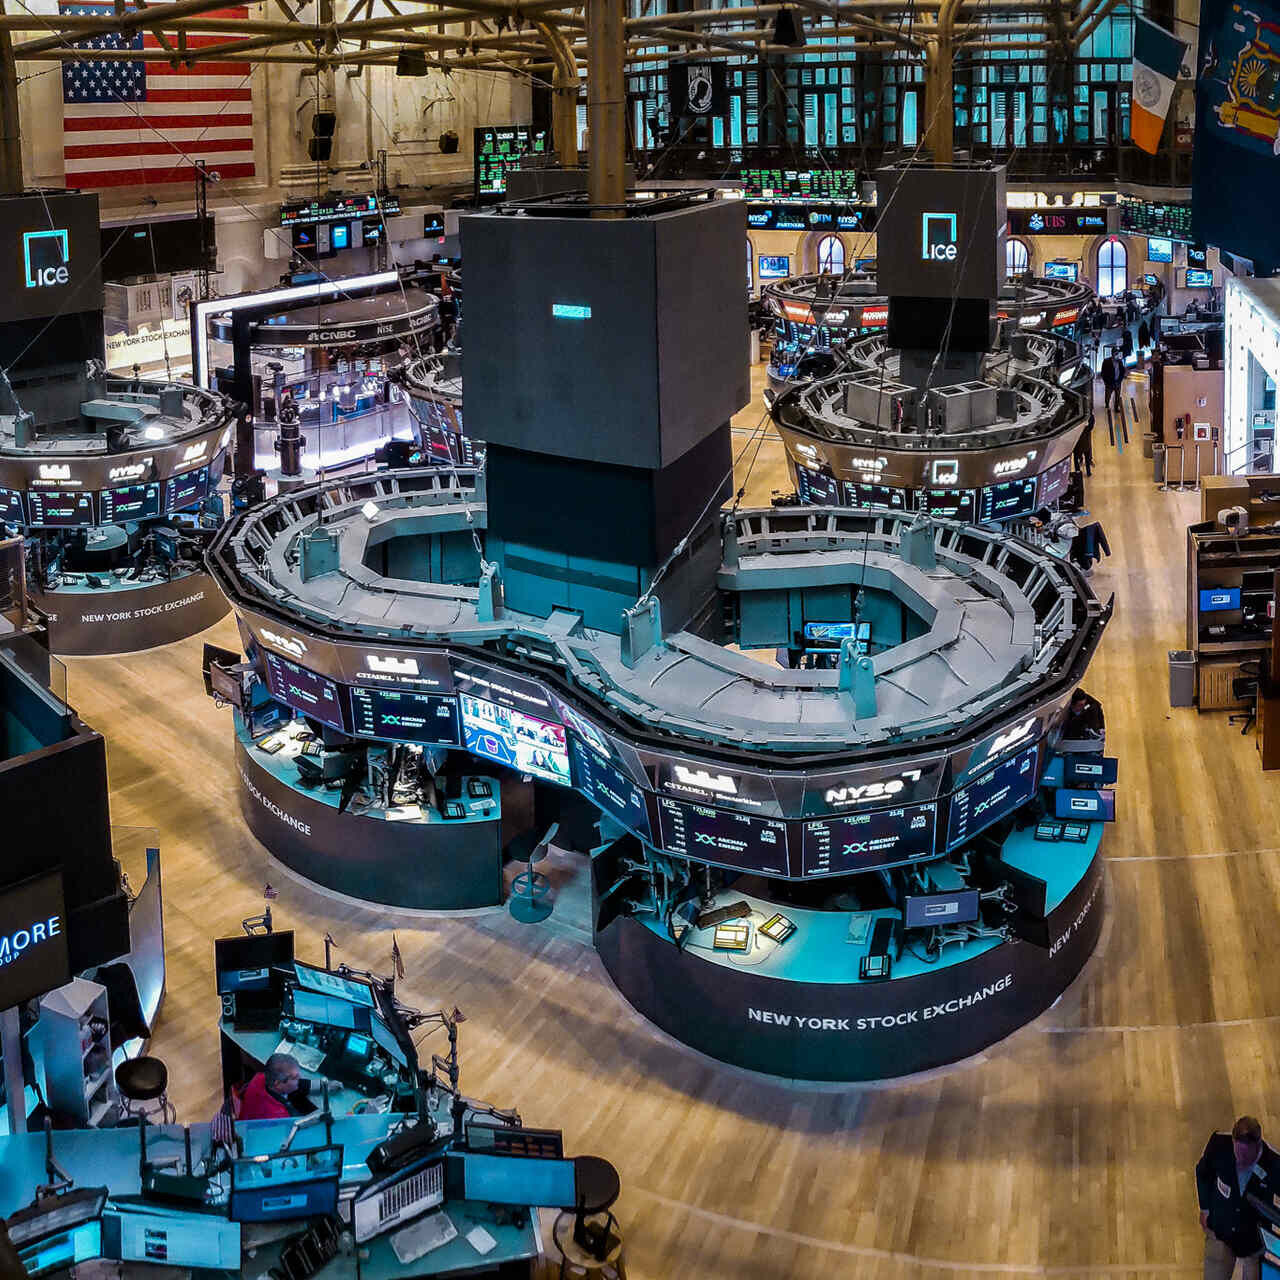 ETF: Нью-Йорк биржасынын соода аянты (New York Stock Exchange же кыскартылган NYSE), атактуу Уолл Стриттин негизинде жана 1817-жылы негизделген.